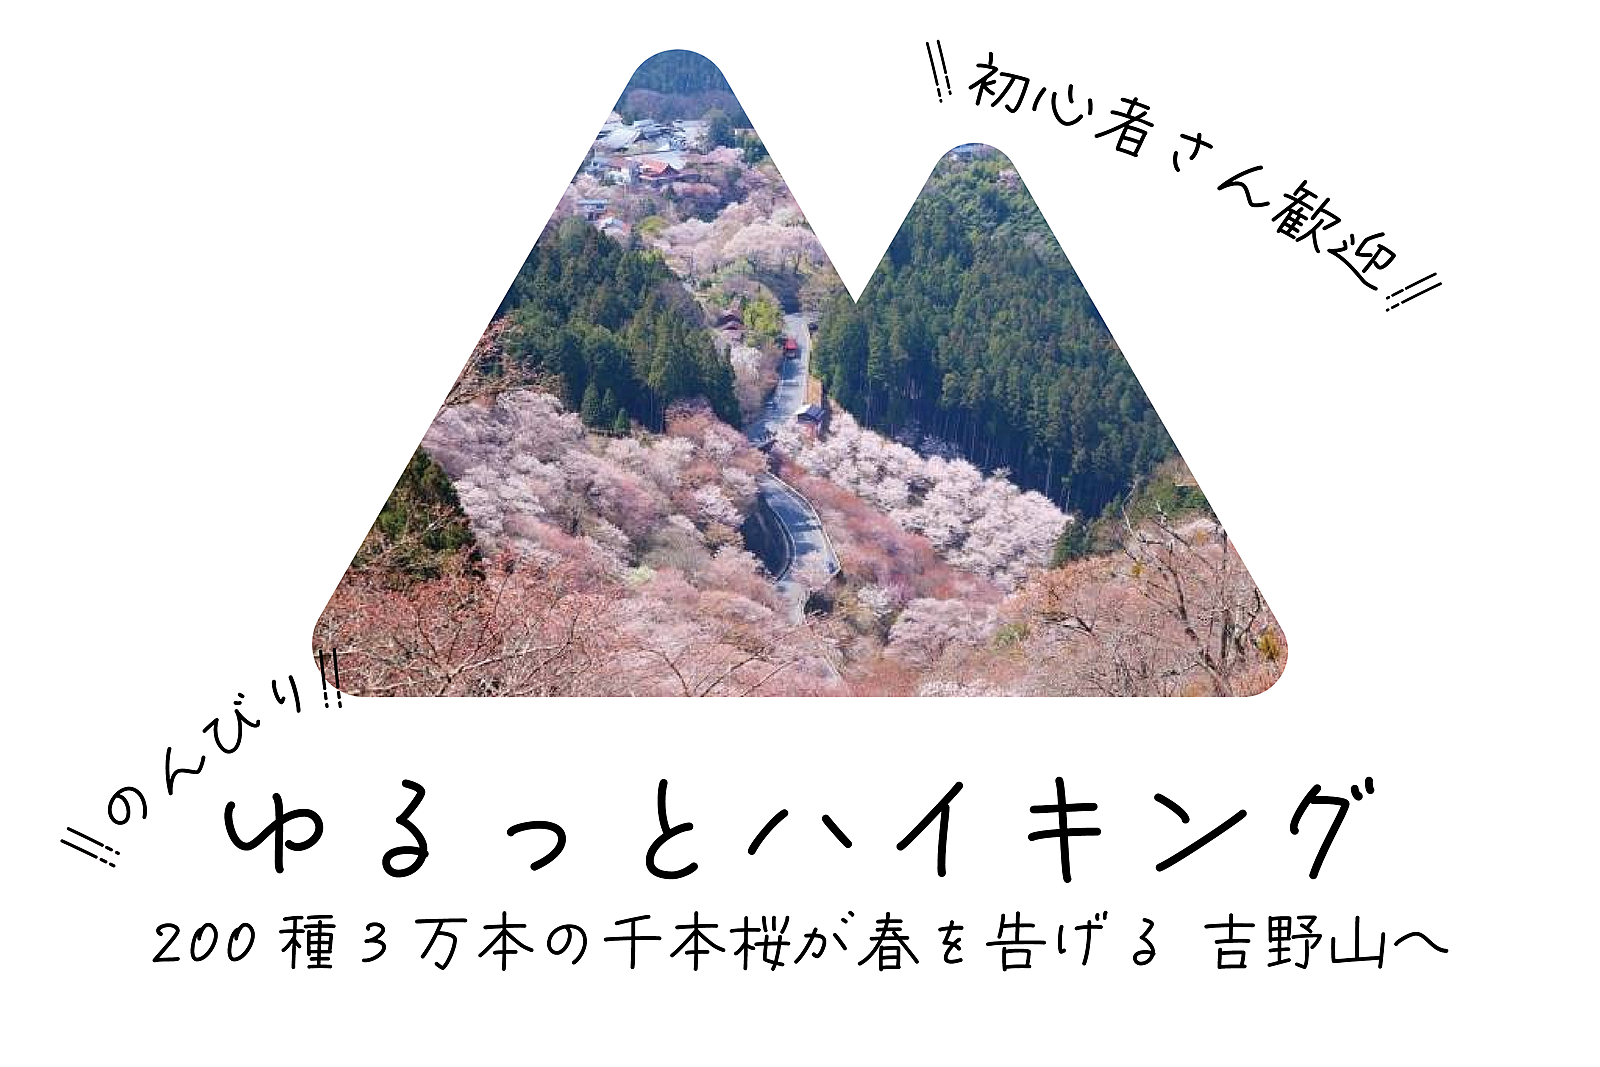 【満開予報】ゆるっとハイキング 200種3万本の千本桜が春を告げる 吉野山へ【初心者歓迎】